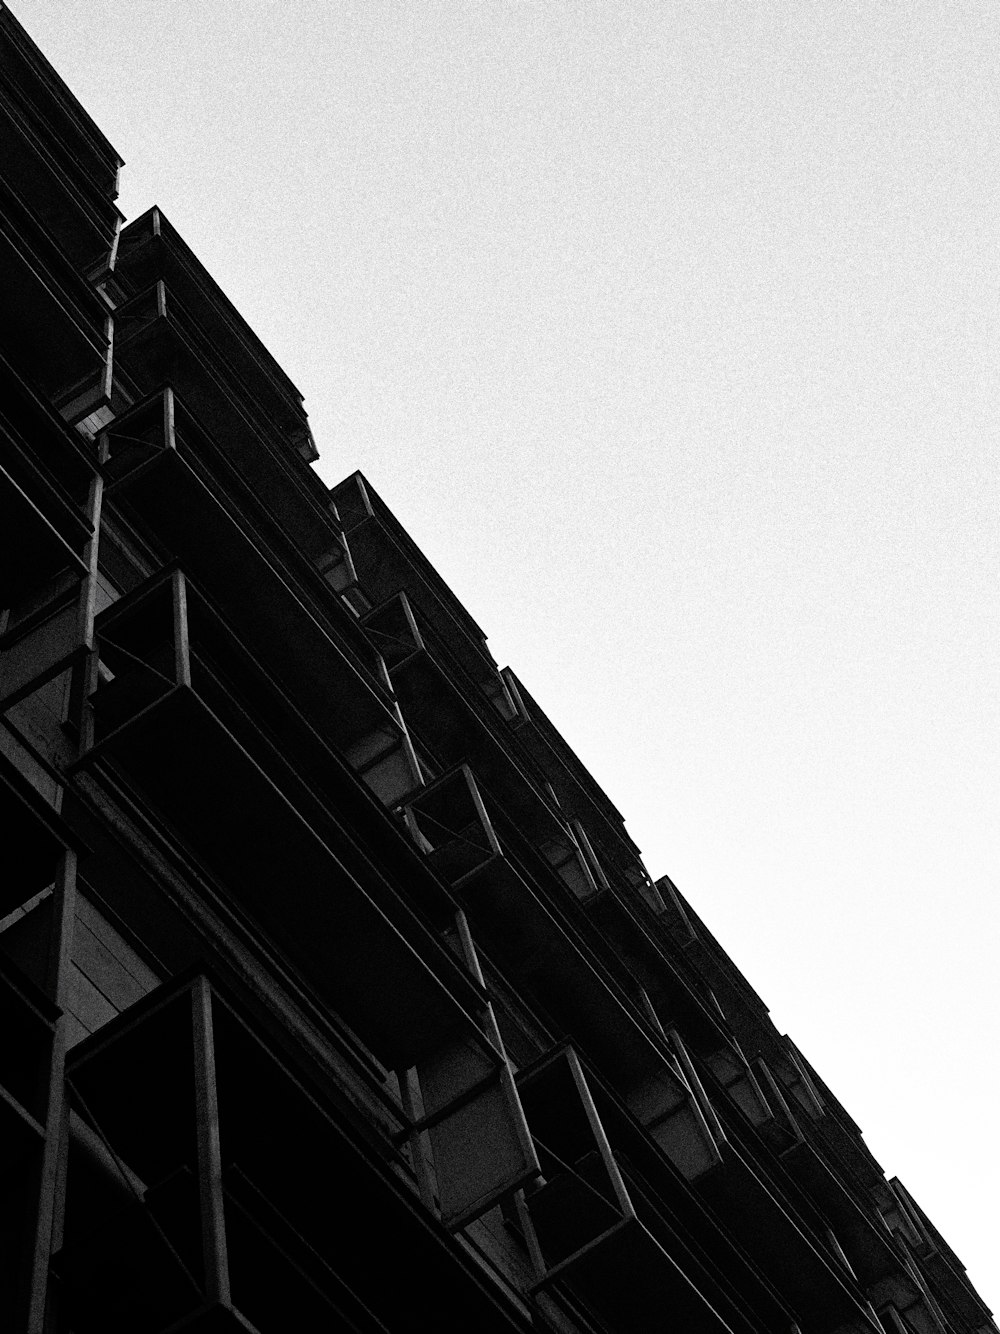 Une photo en noir et blanc d’un grand immeuble